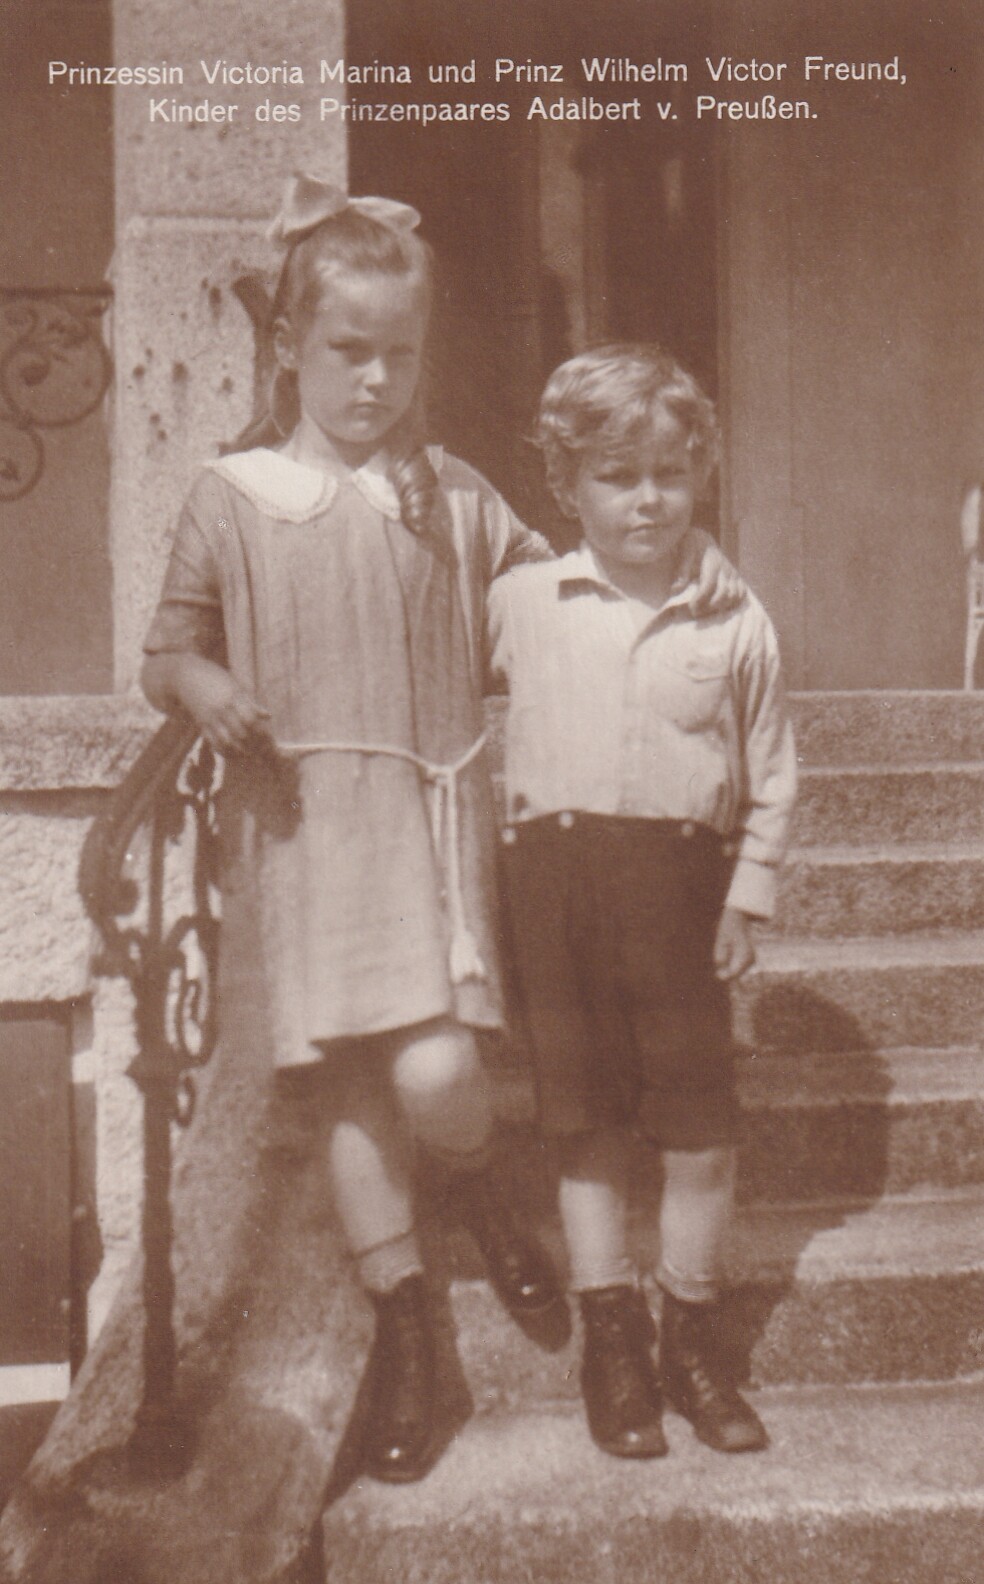 Bildpostkarte mit Foto der beiden Kinder von Adalbert Prinz von Preußen, 1925 (Schloß Wernigerode GmbH RR-F)